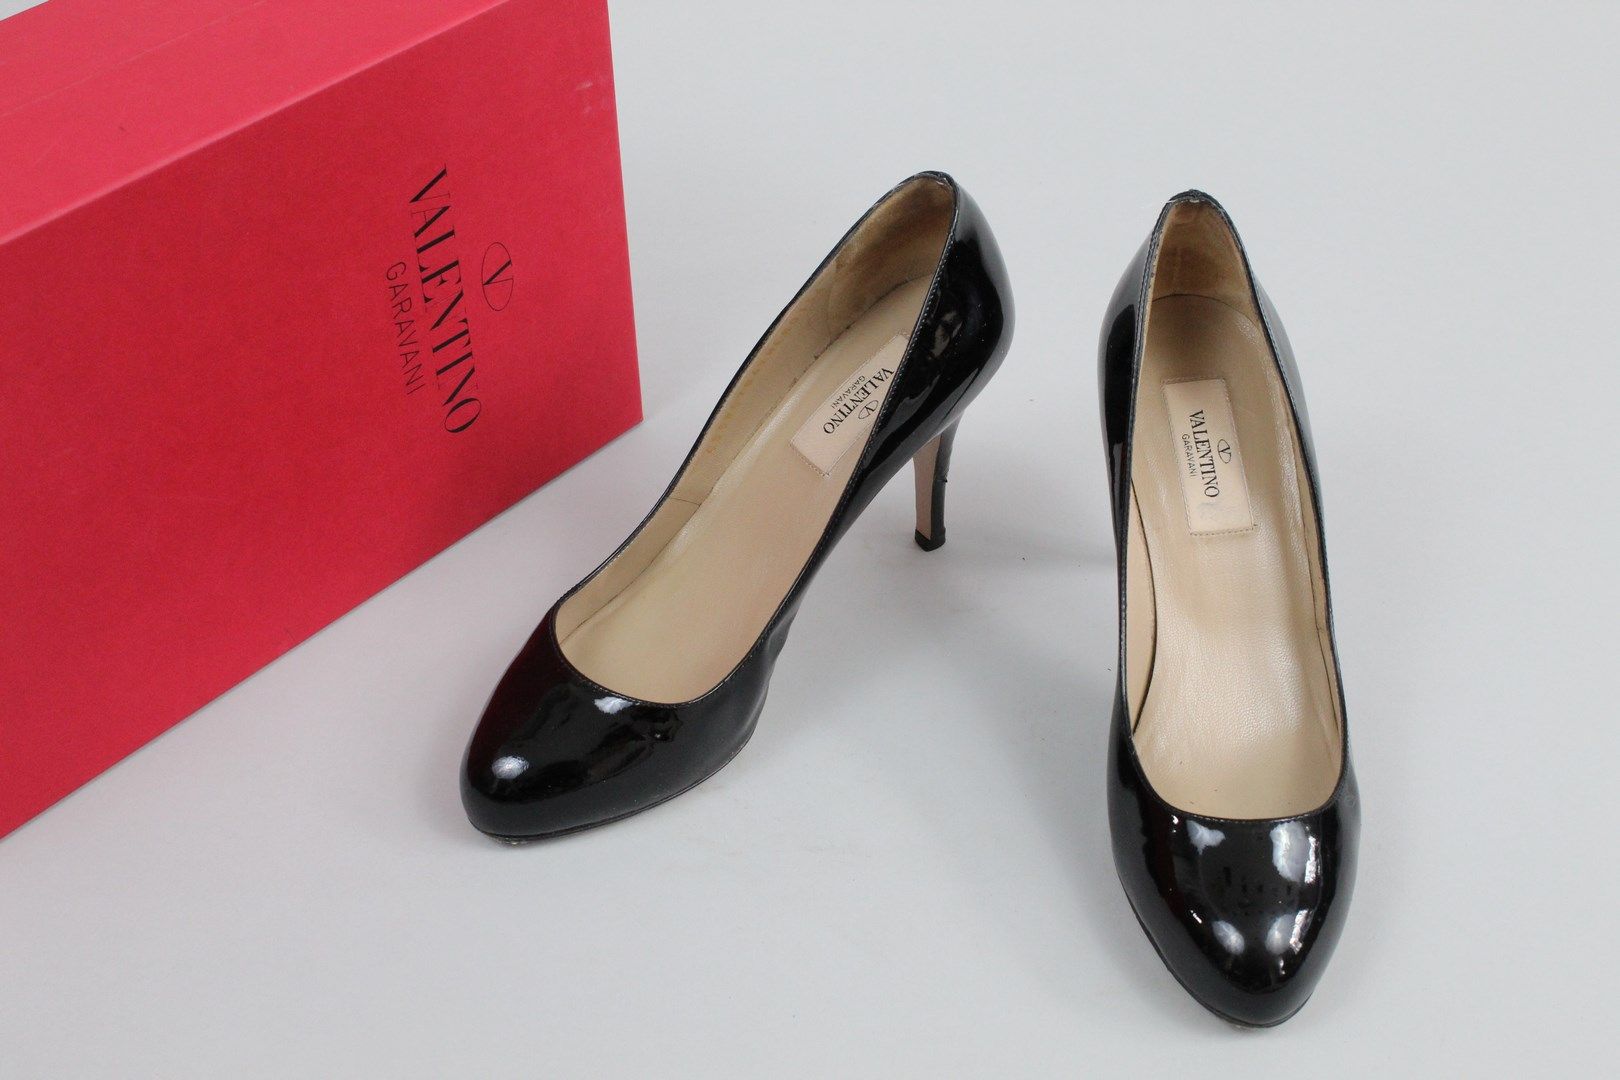 Null 梵蒂诺



一对黑色釉面皮革鞋。

穿着。



尺寸：36



鞋跟高度：9厘米



有盒子。